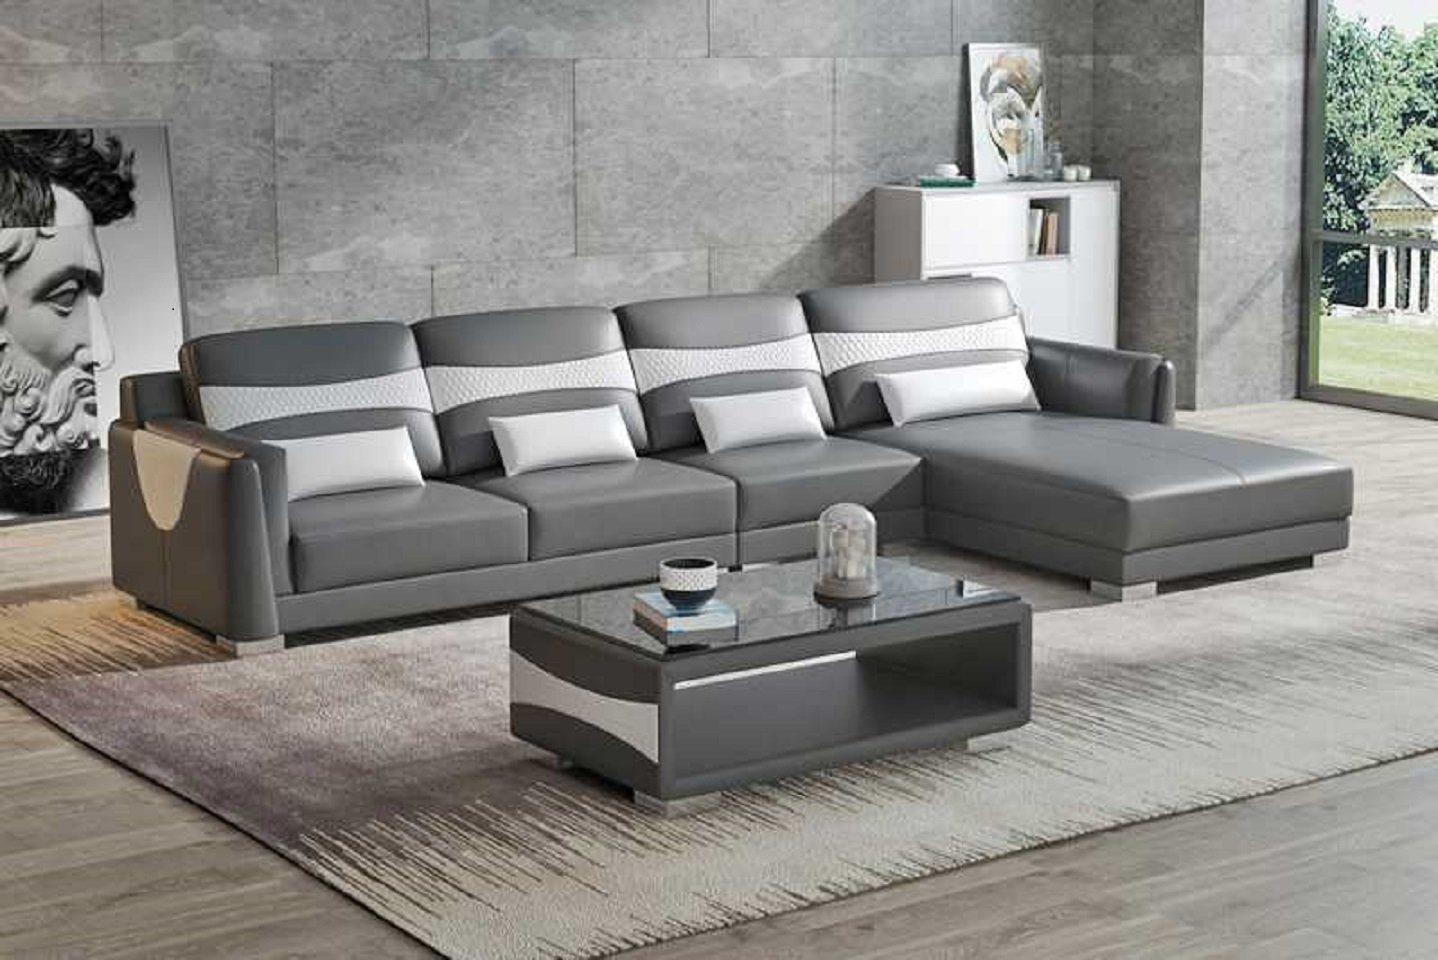 Europe Liege Form JVmoebel Teile, Neu, L in Made Couch Eckgarnitur Sofa Luxus Grau Ecksofa Ecksofa Wohnzimmer 3